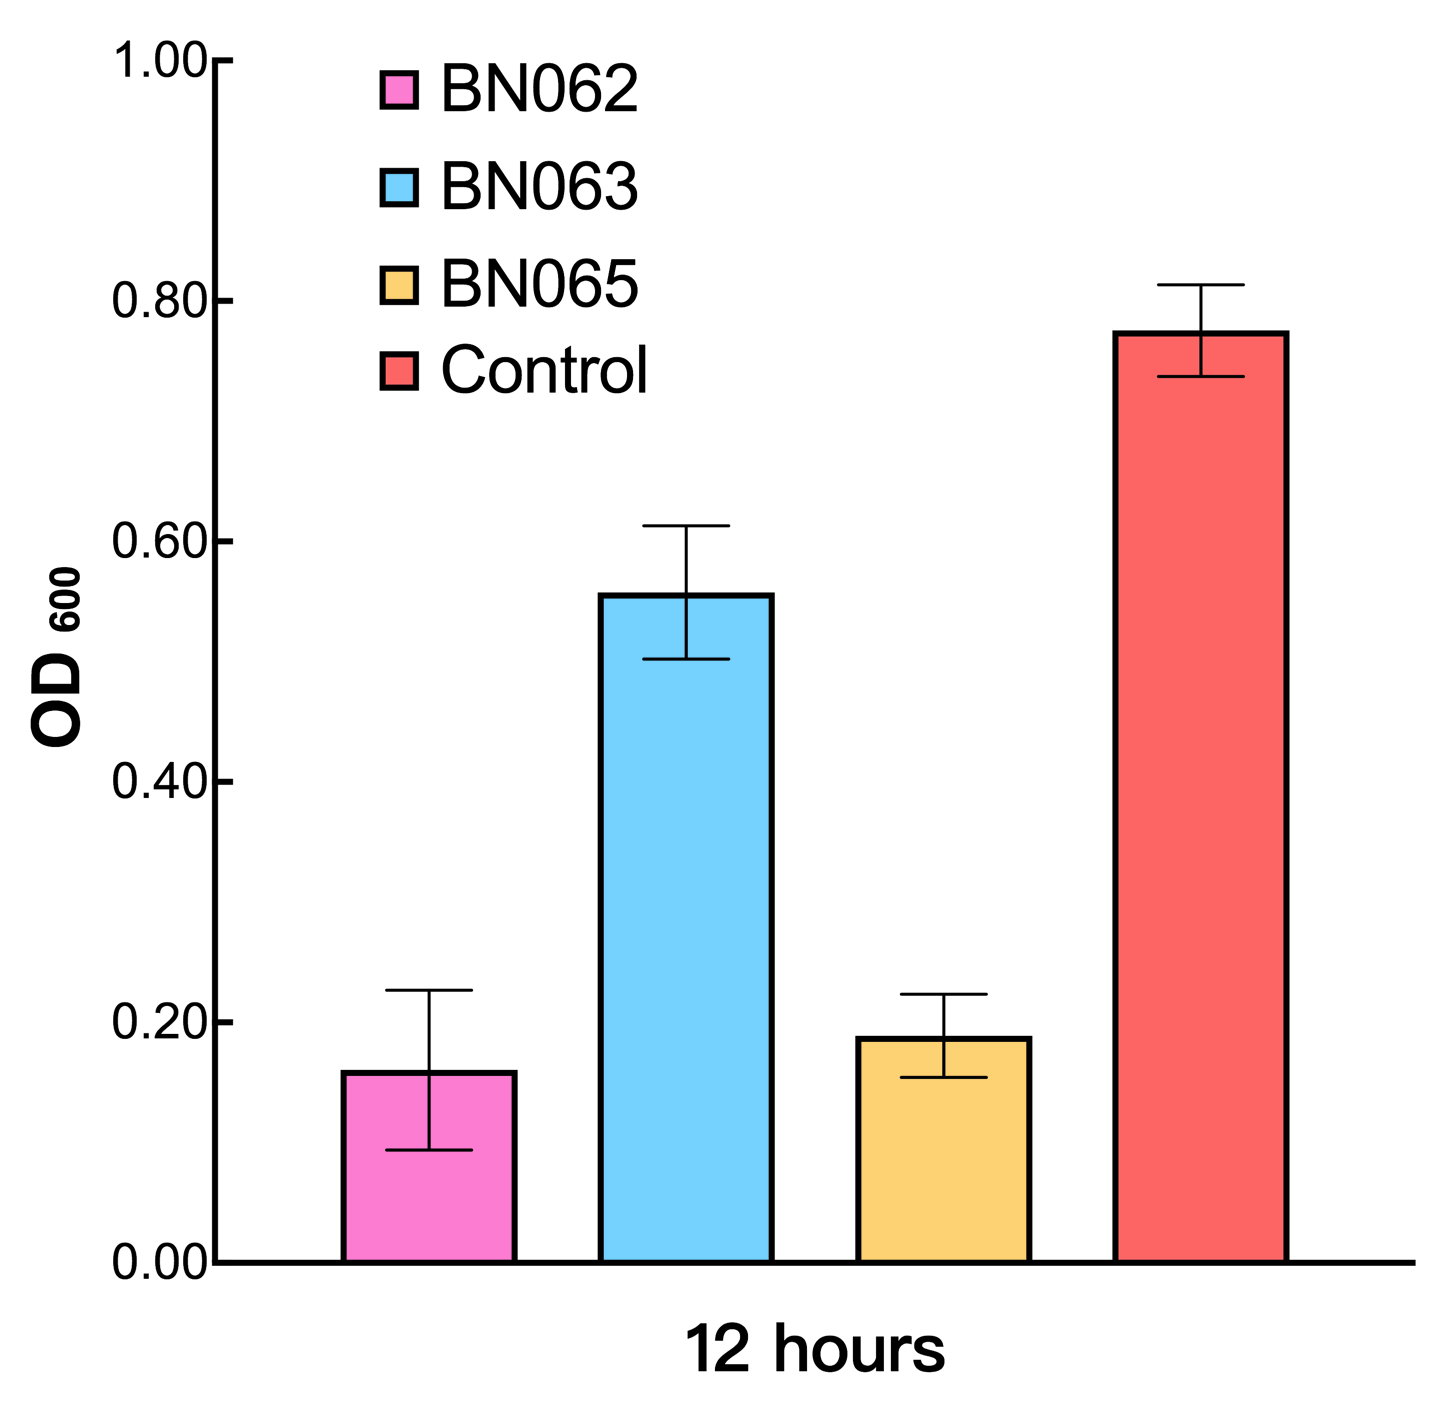  Bar graph